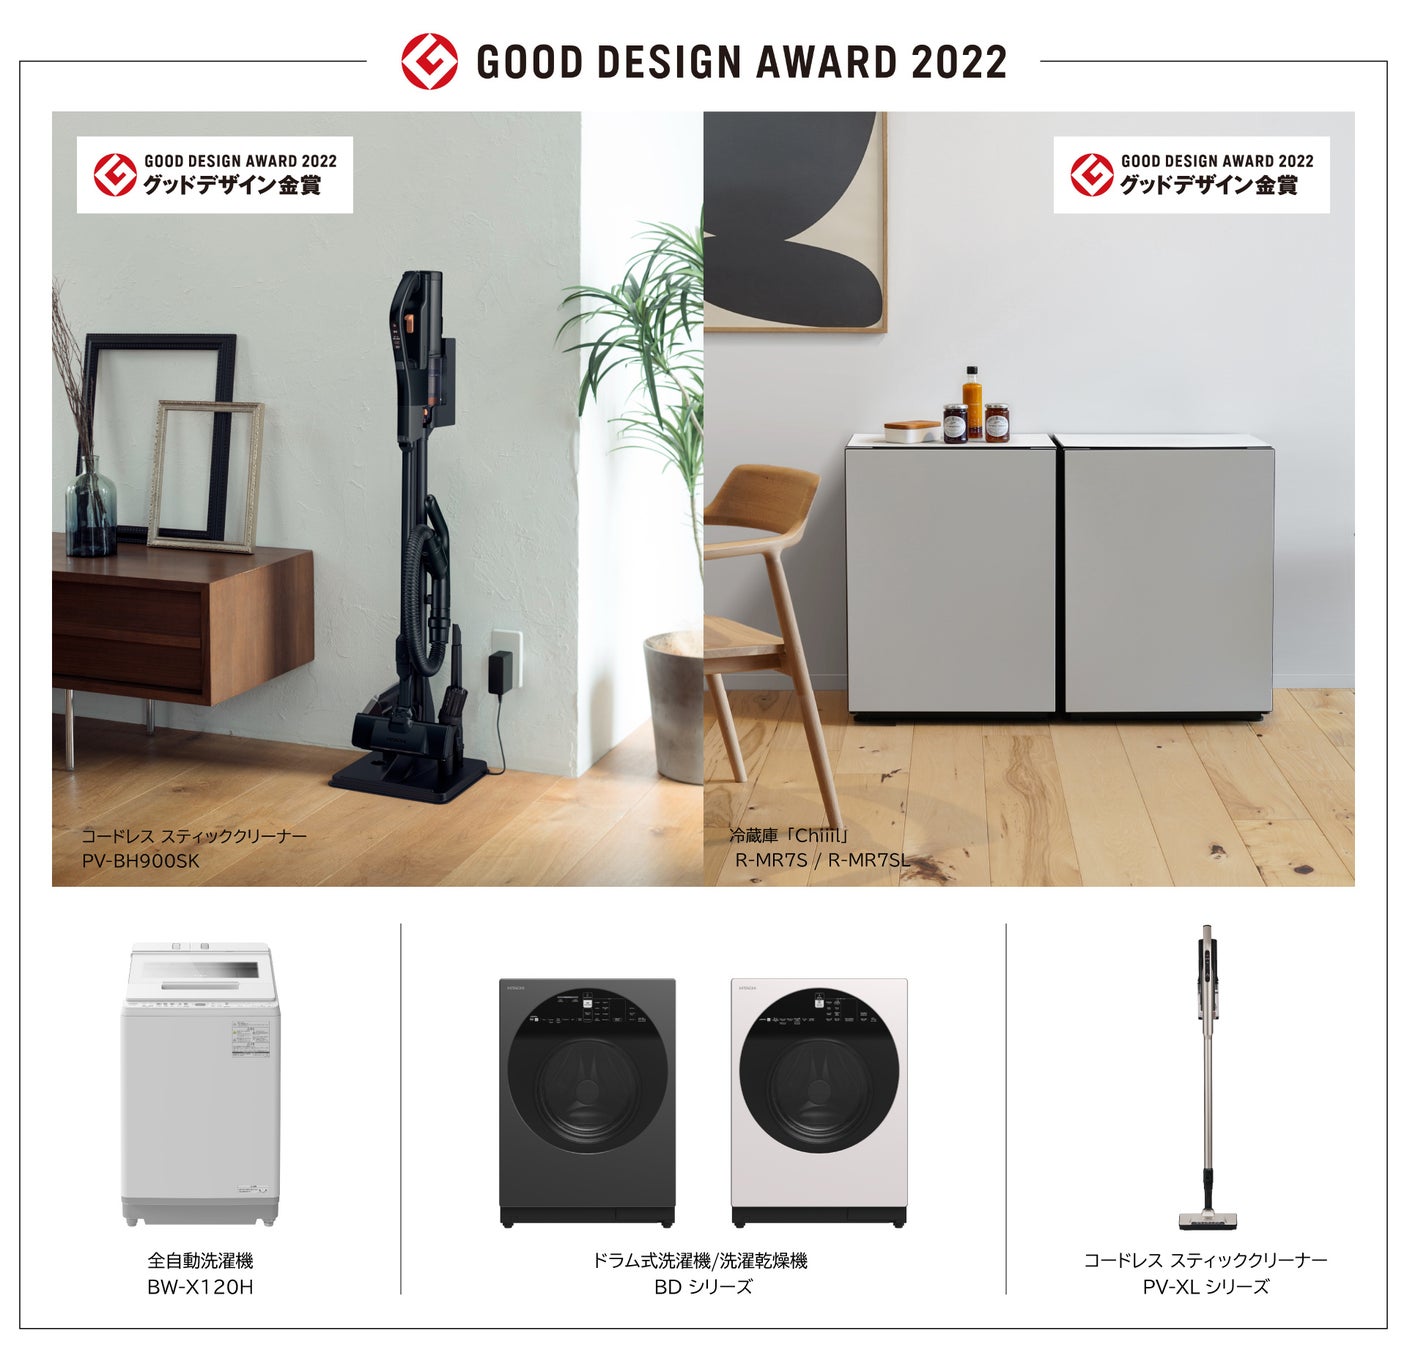 日立ブランド 家電5製品が「2022年度グッドデザイン賞」を受賞、さらに上位の「グッドデザイン金賞」に日立グループ初の2製品同時選出のサブ画像1